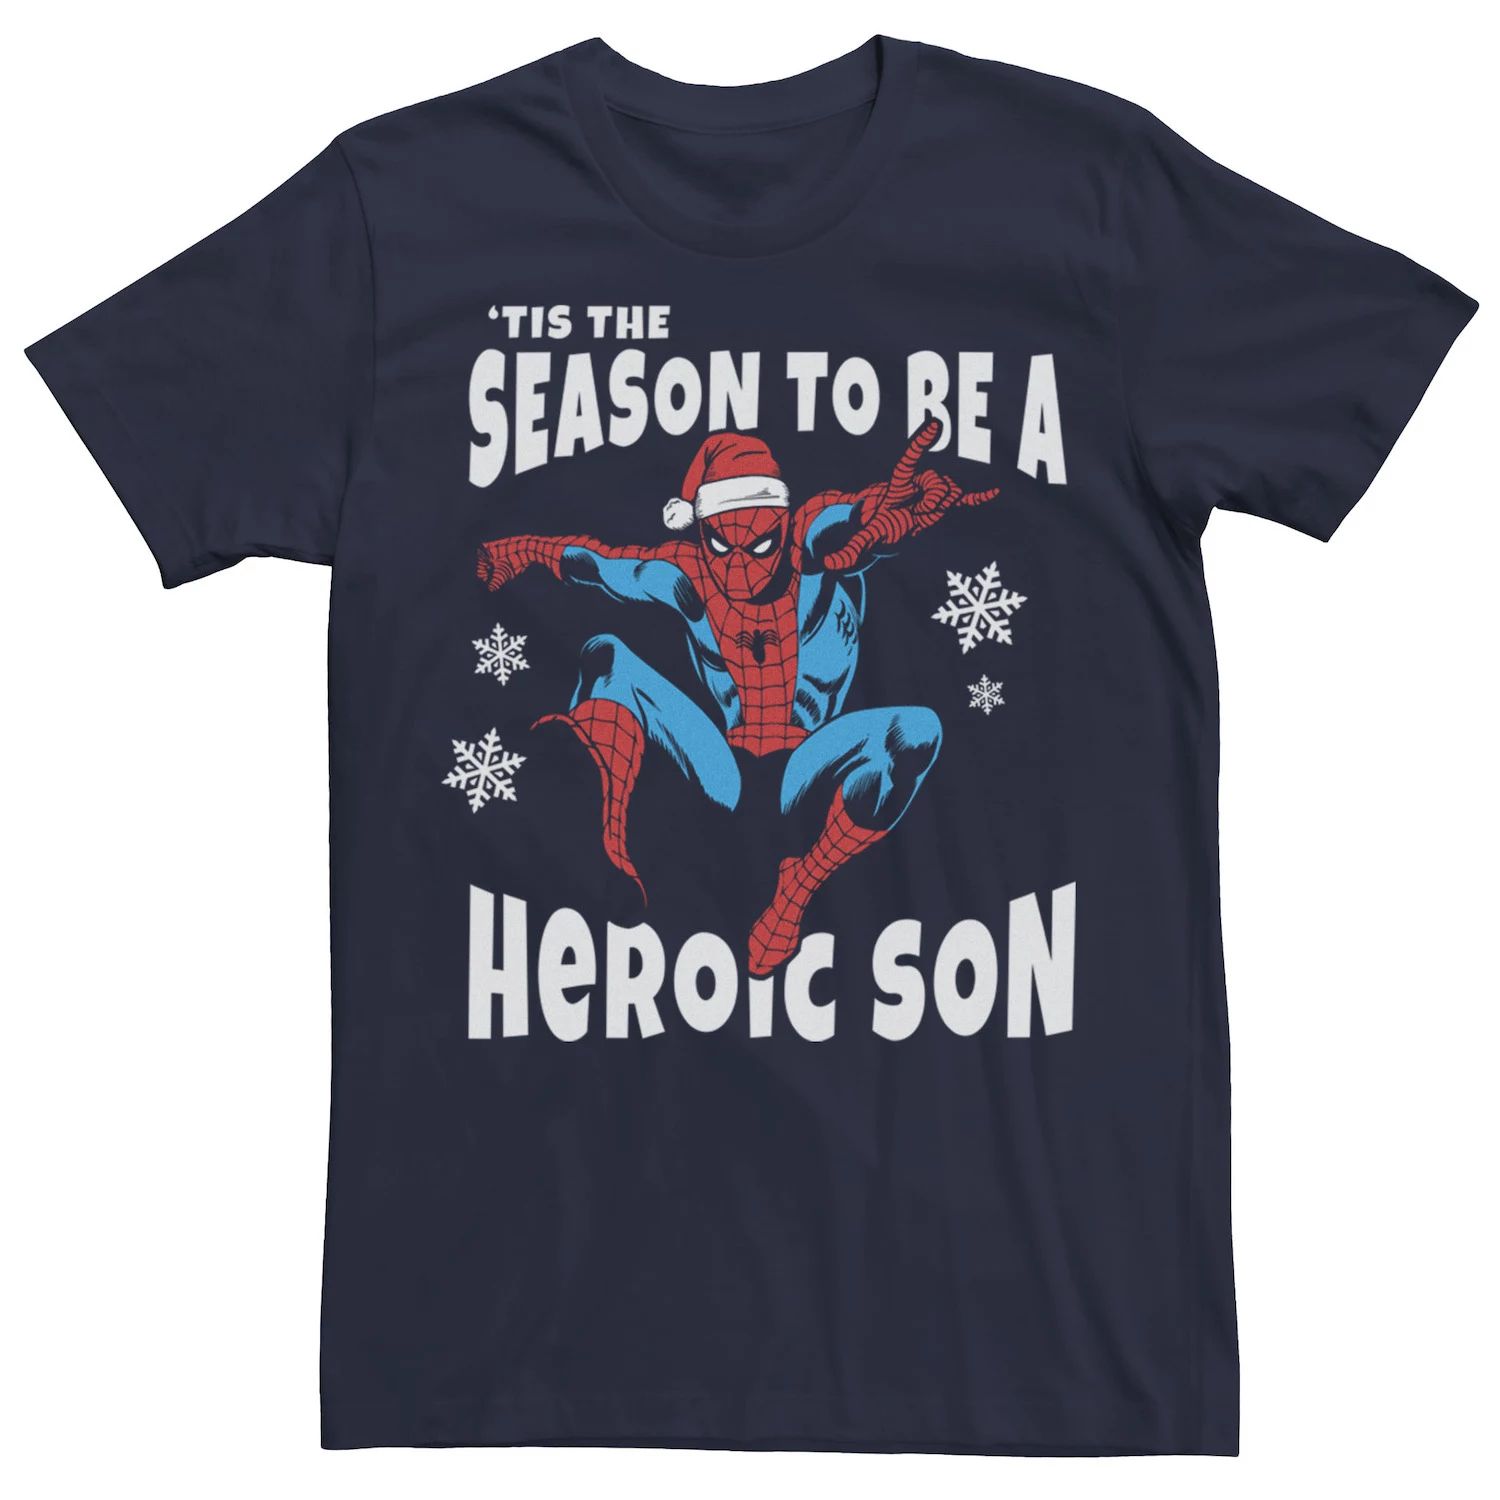 Мужская футболка Marvel Spider-Man Season To Be A Heroic Son